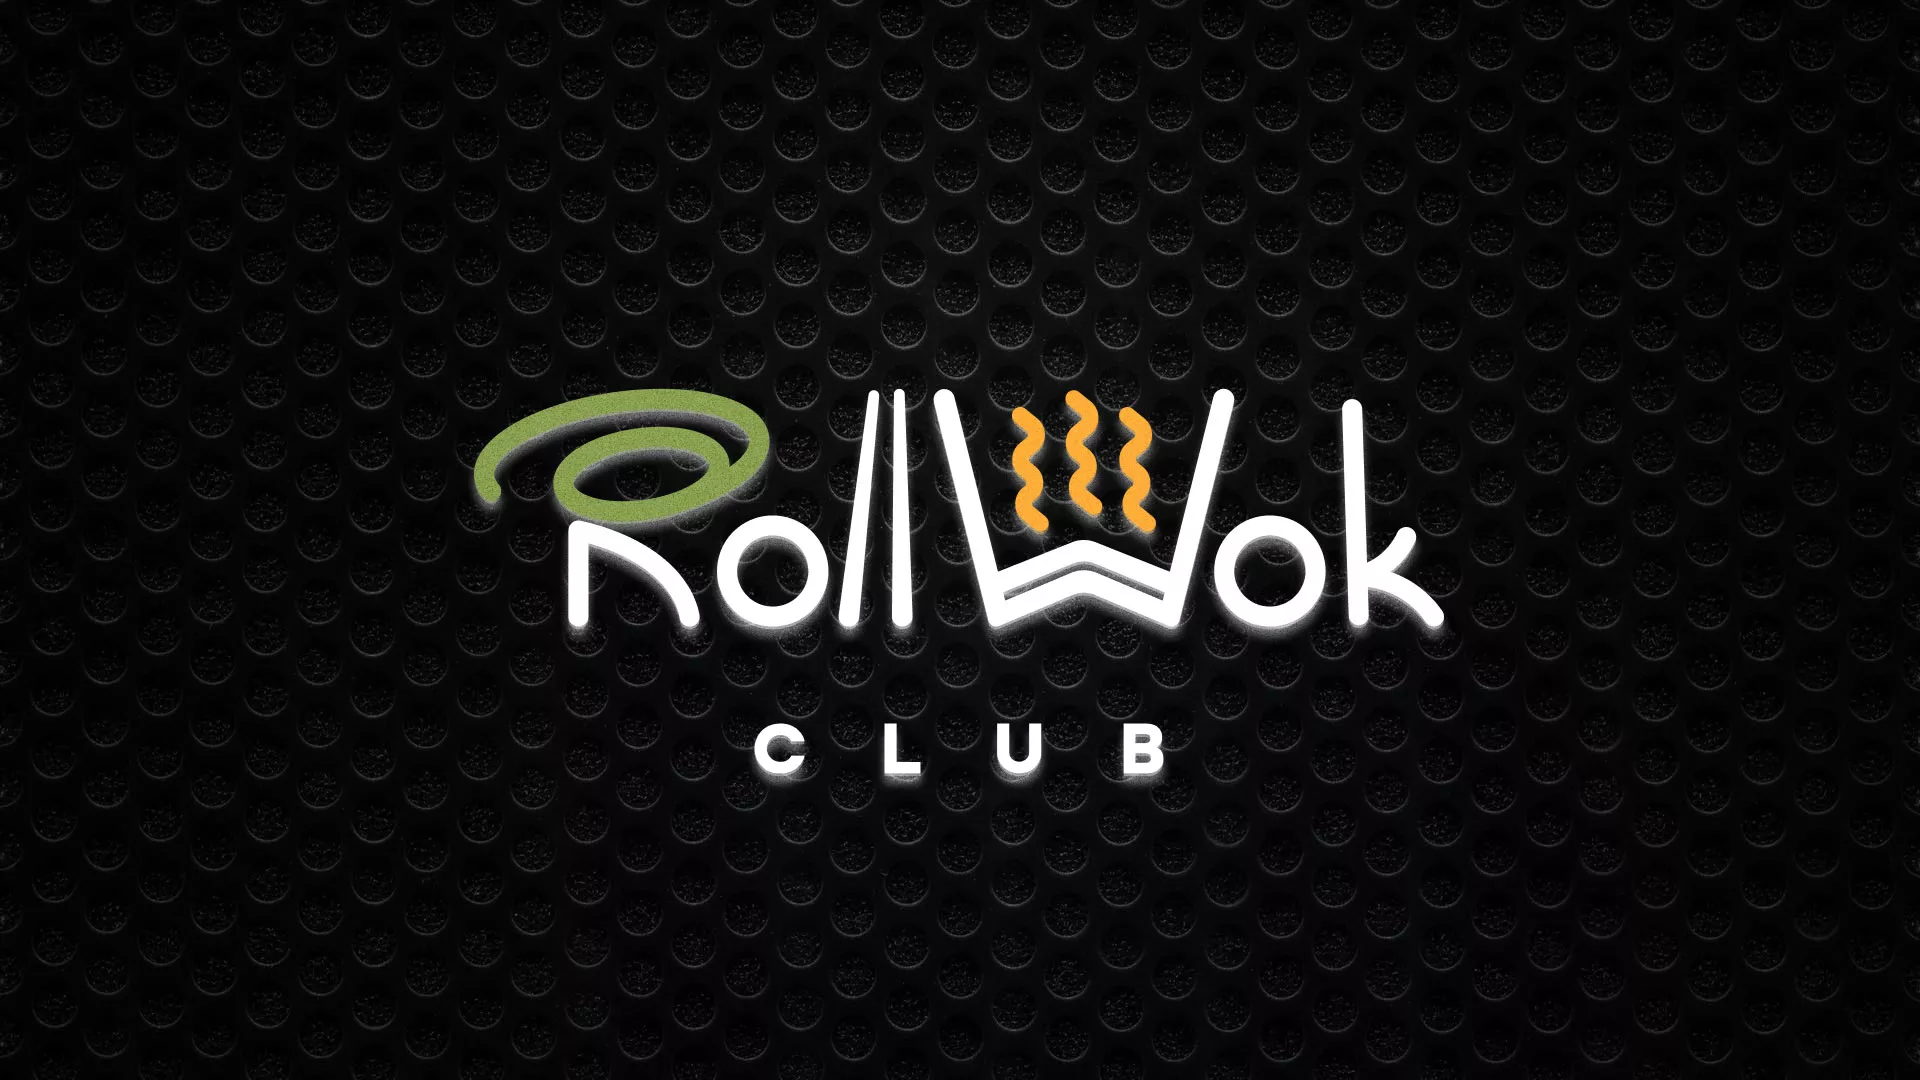 Брендирование торговых точек суши-бара «Roll Wok Club» в Тайшете